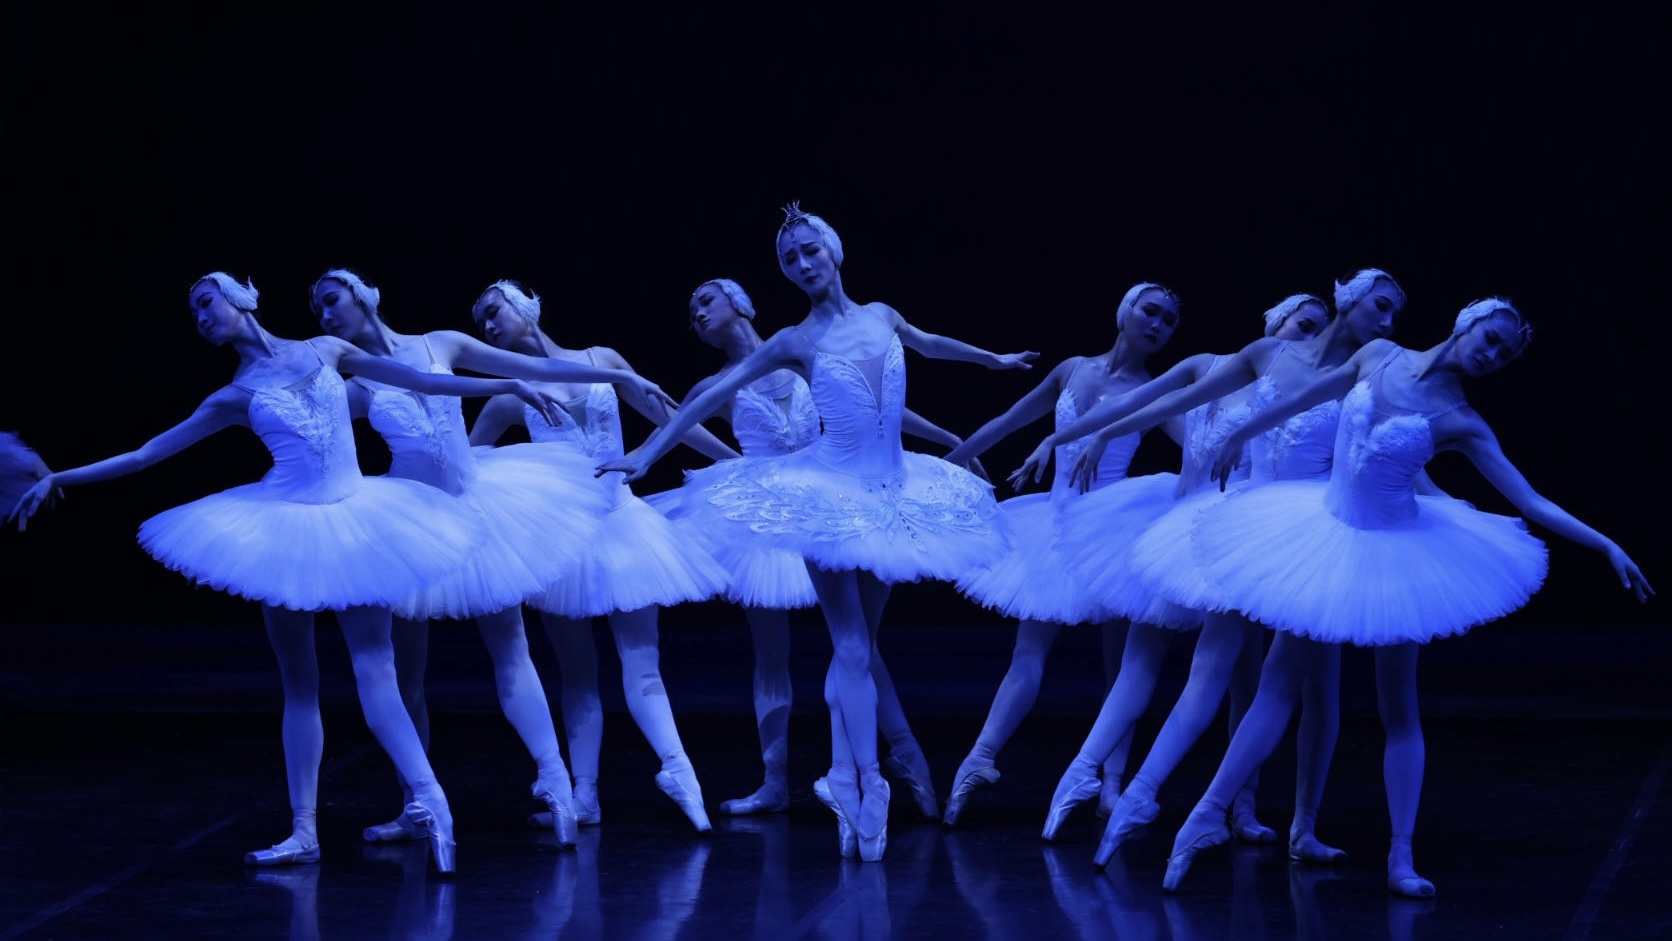 中央芭蕾舞團《天鵝湖》驚艷亮相 高超舞技淒美演繹動人愛情故事